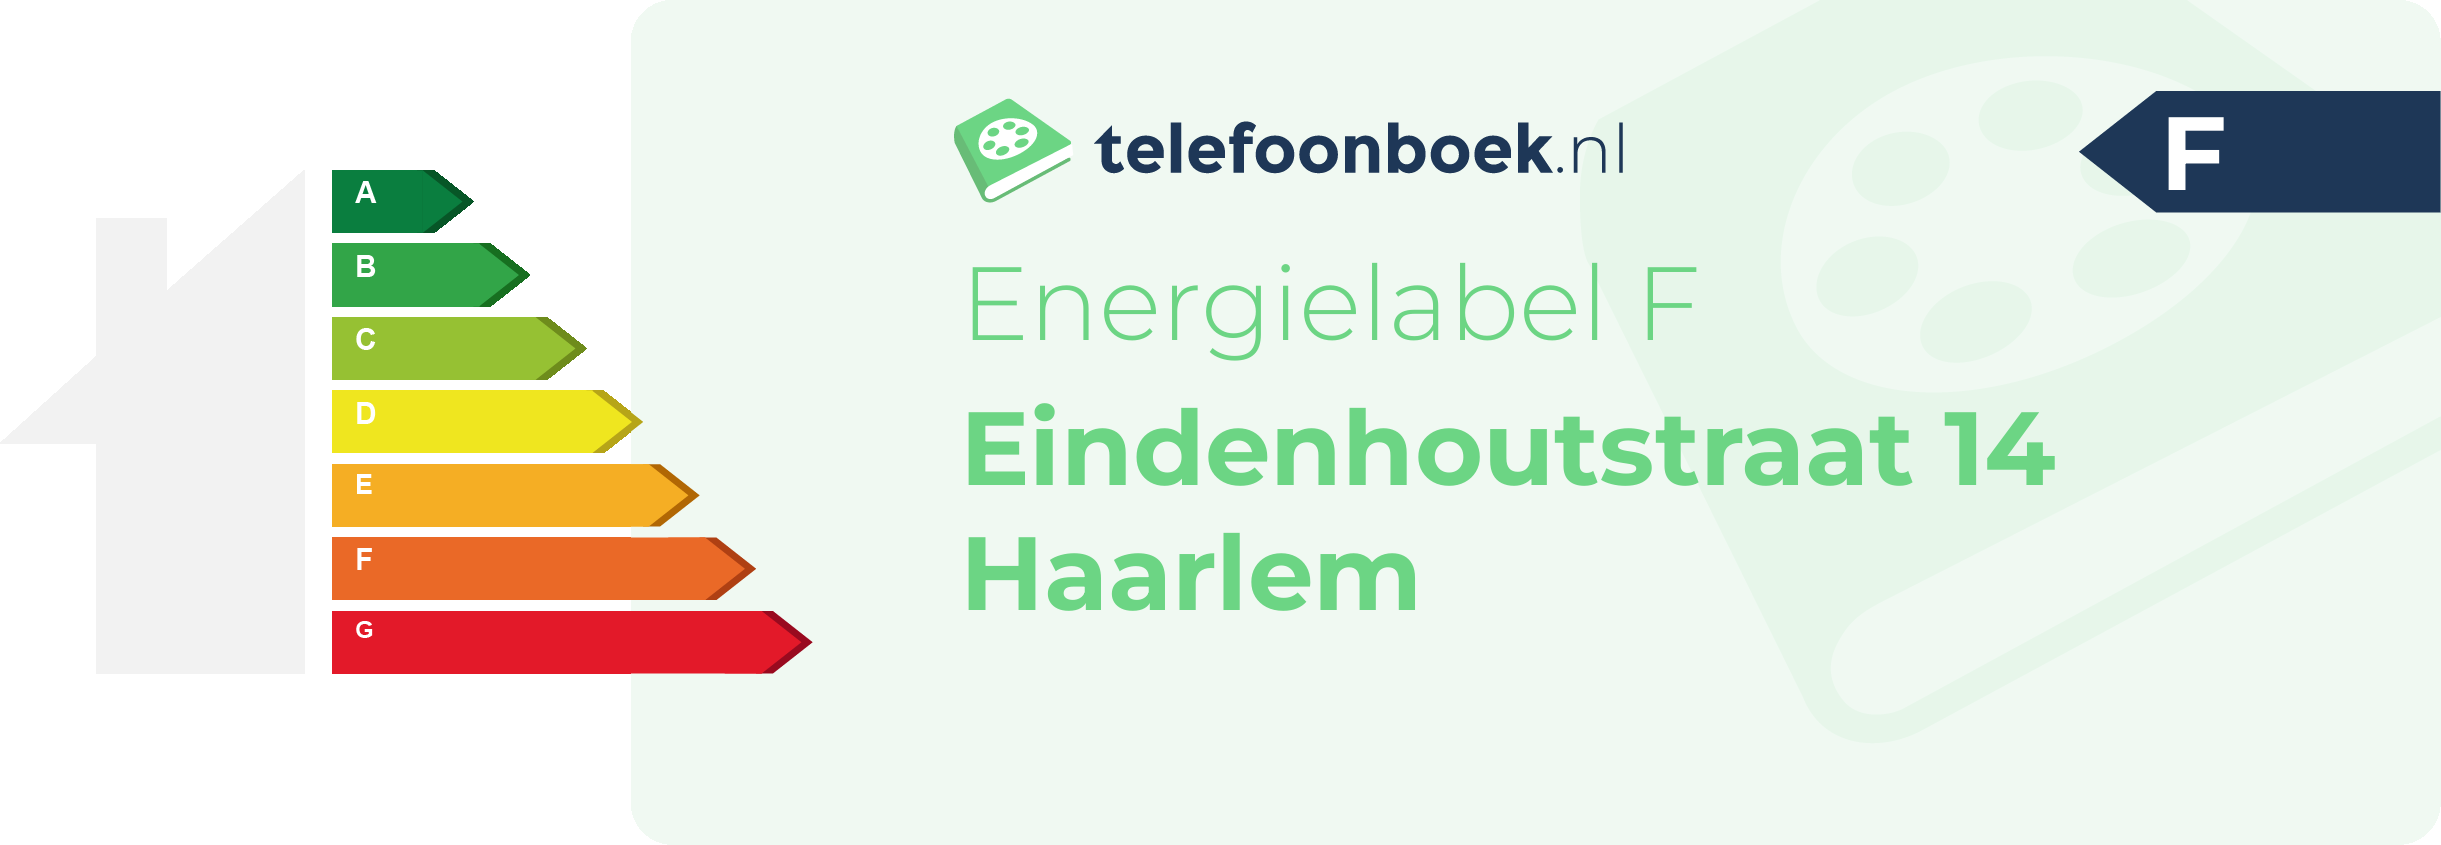 Energielabel Eindenhoutstraat 14 Haarlem